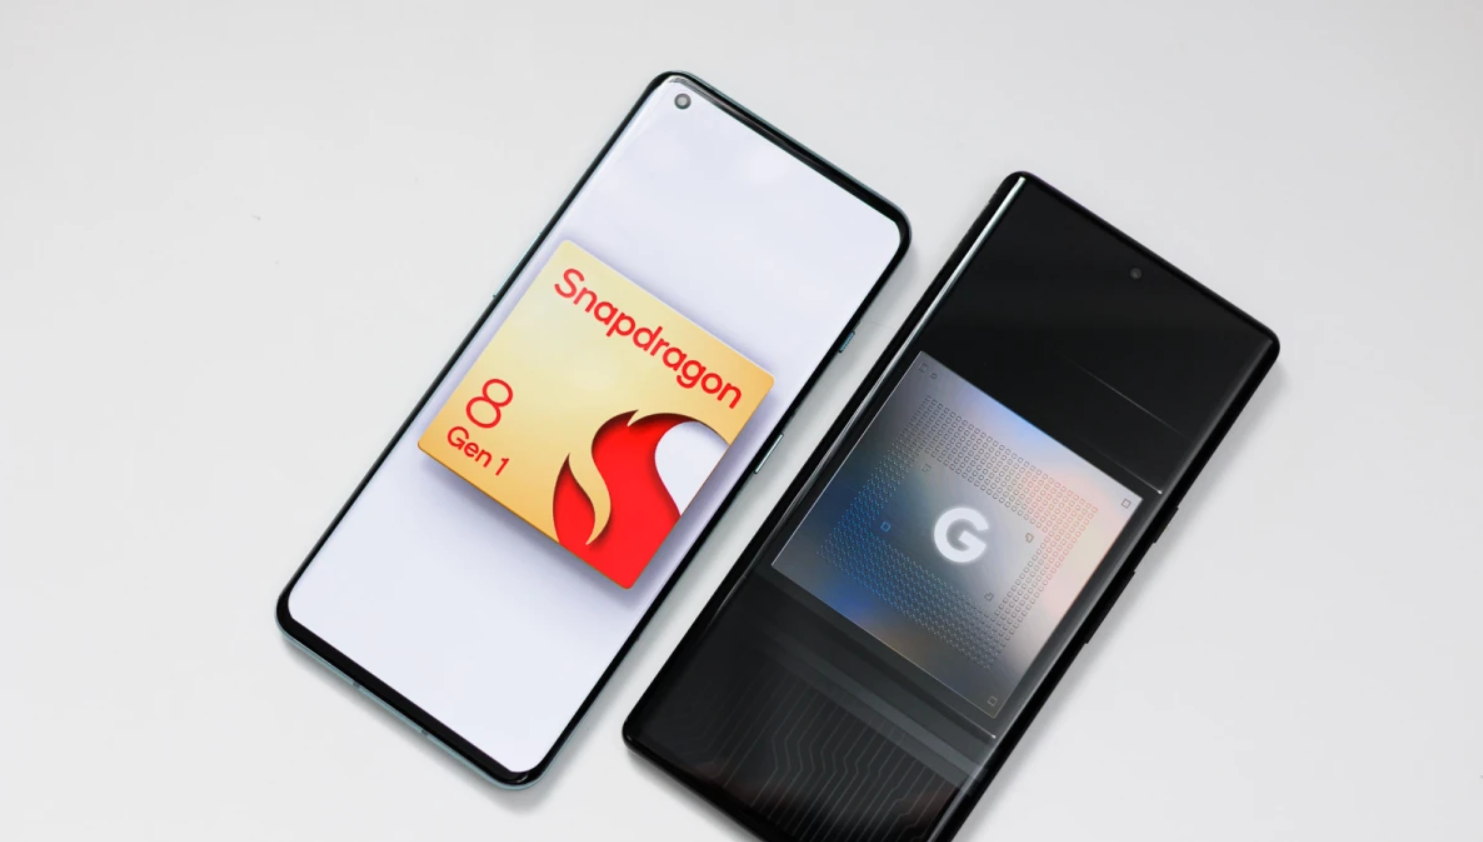 สมาร์ทโฟนเครื่องแรกที่ใช้ Snapdragon 8 Gen 1+ มีแววจะได้เปิดตัวในกรกฎาคมนี้